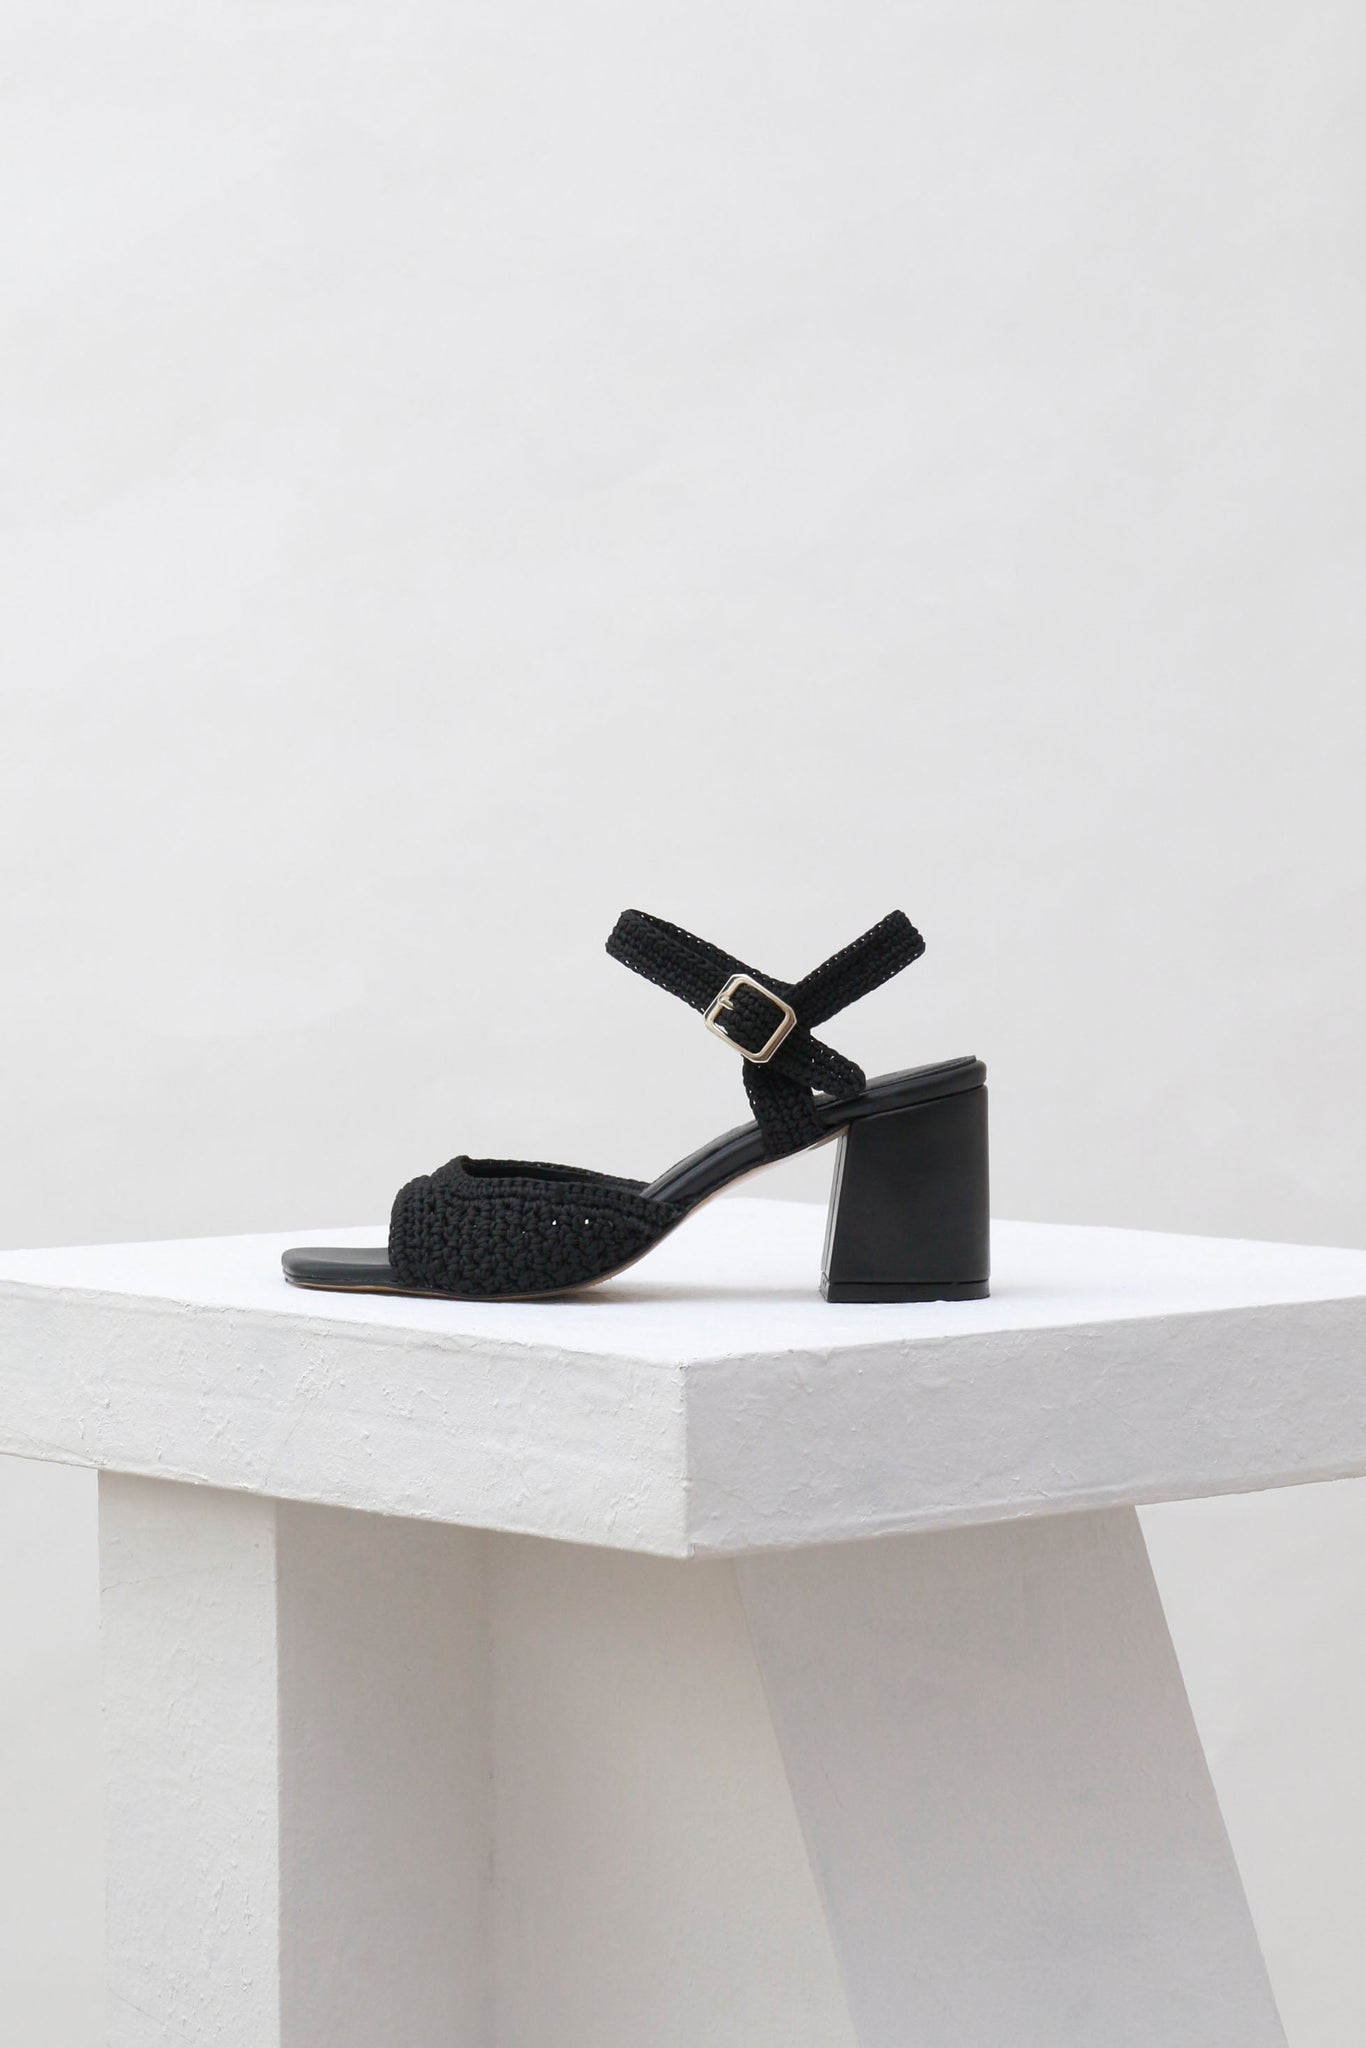 Souliers Martinez Shoes SICILIA - Black Woven Textile Sandals 